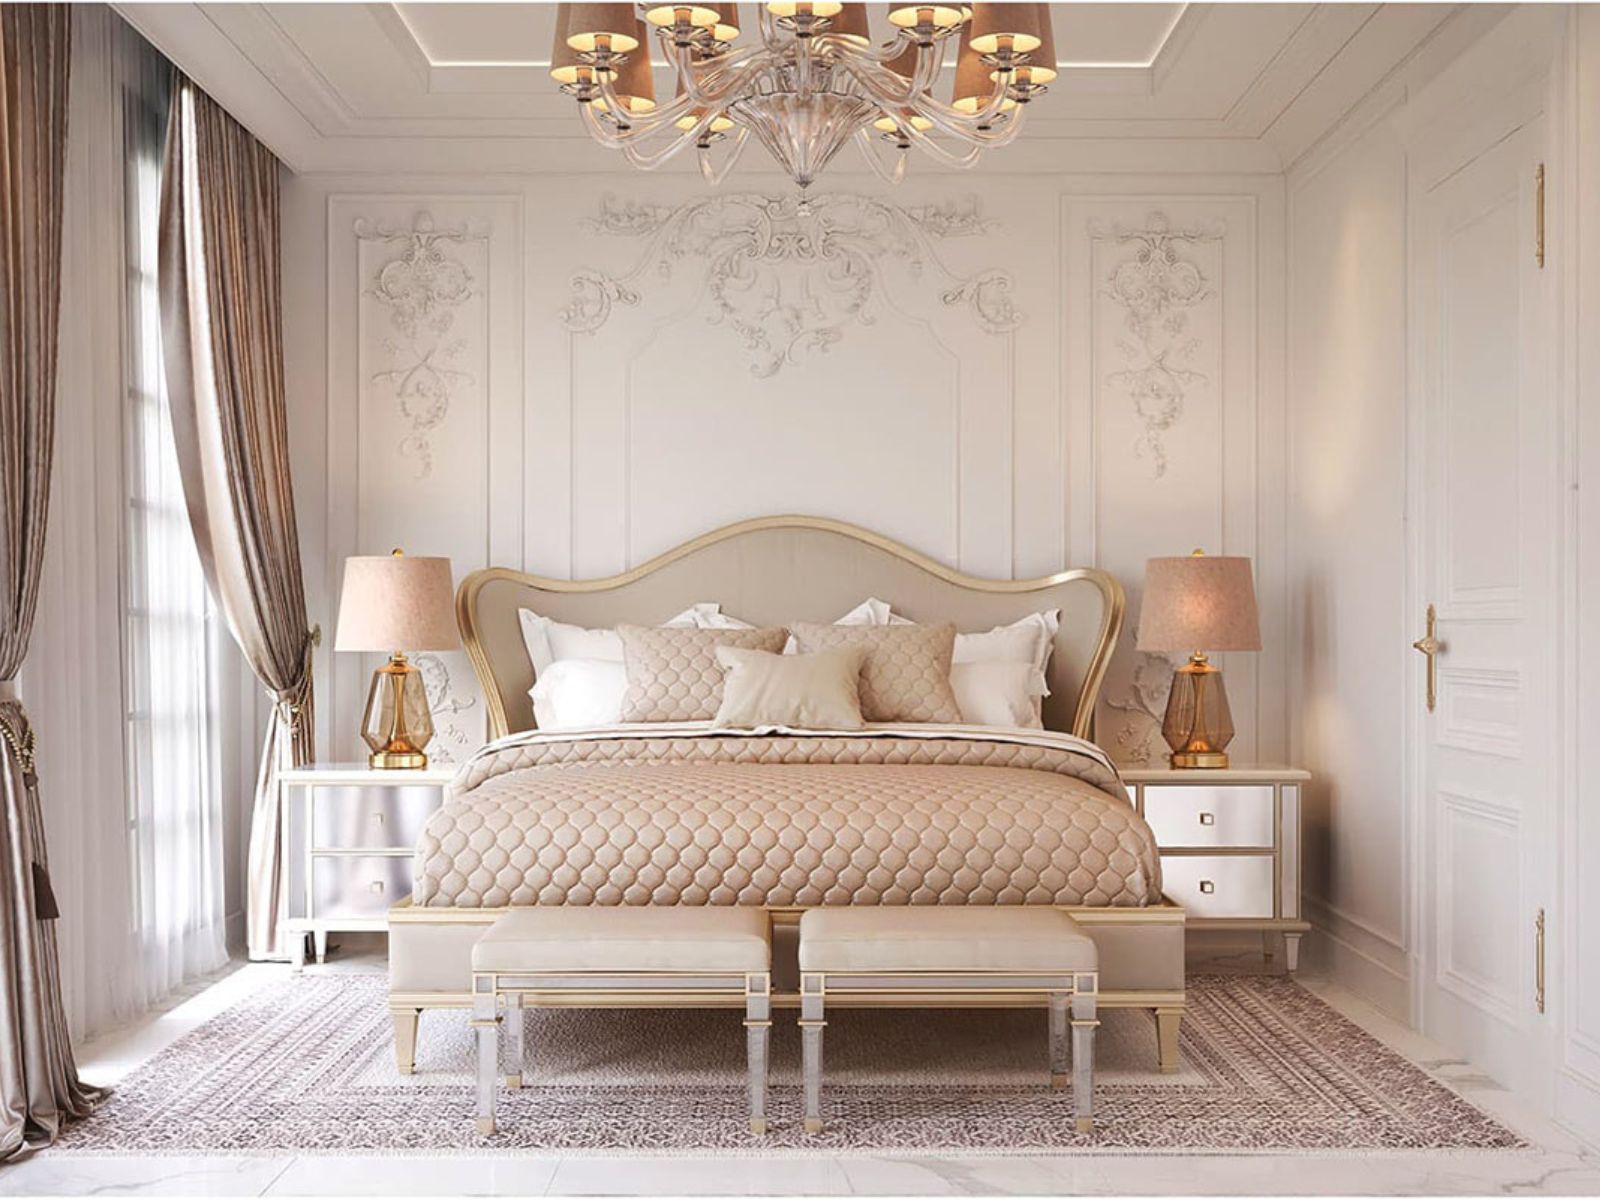 Thiết kế phòng ngủ tân cổ điển kiểu Pháp sang trọng, tinh tế